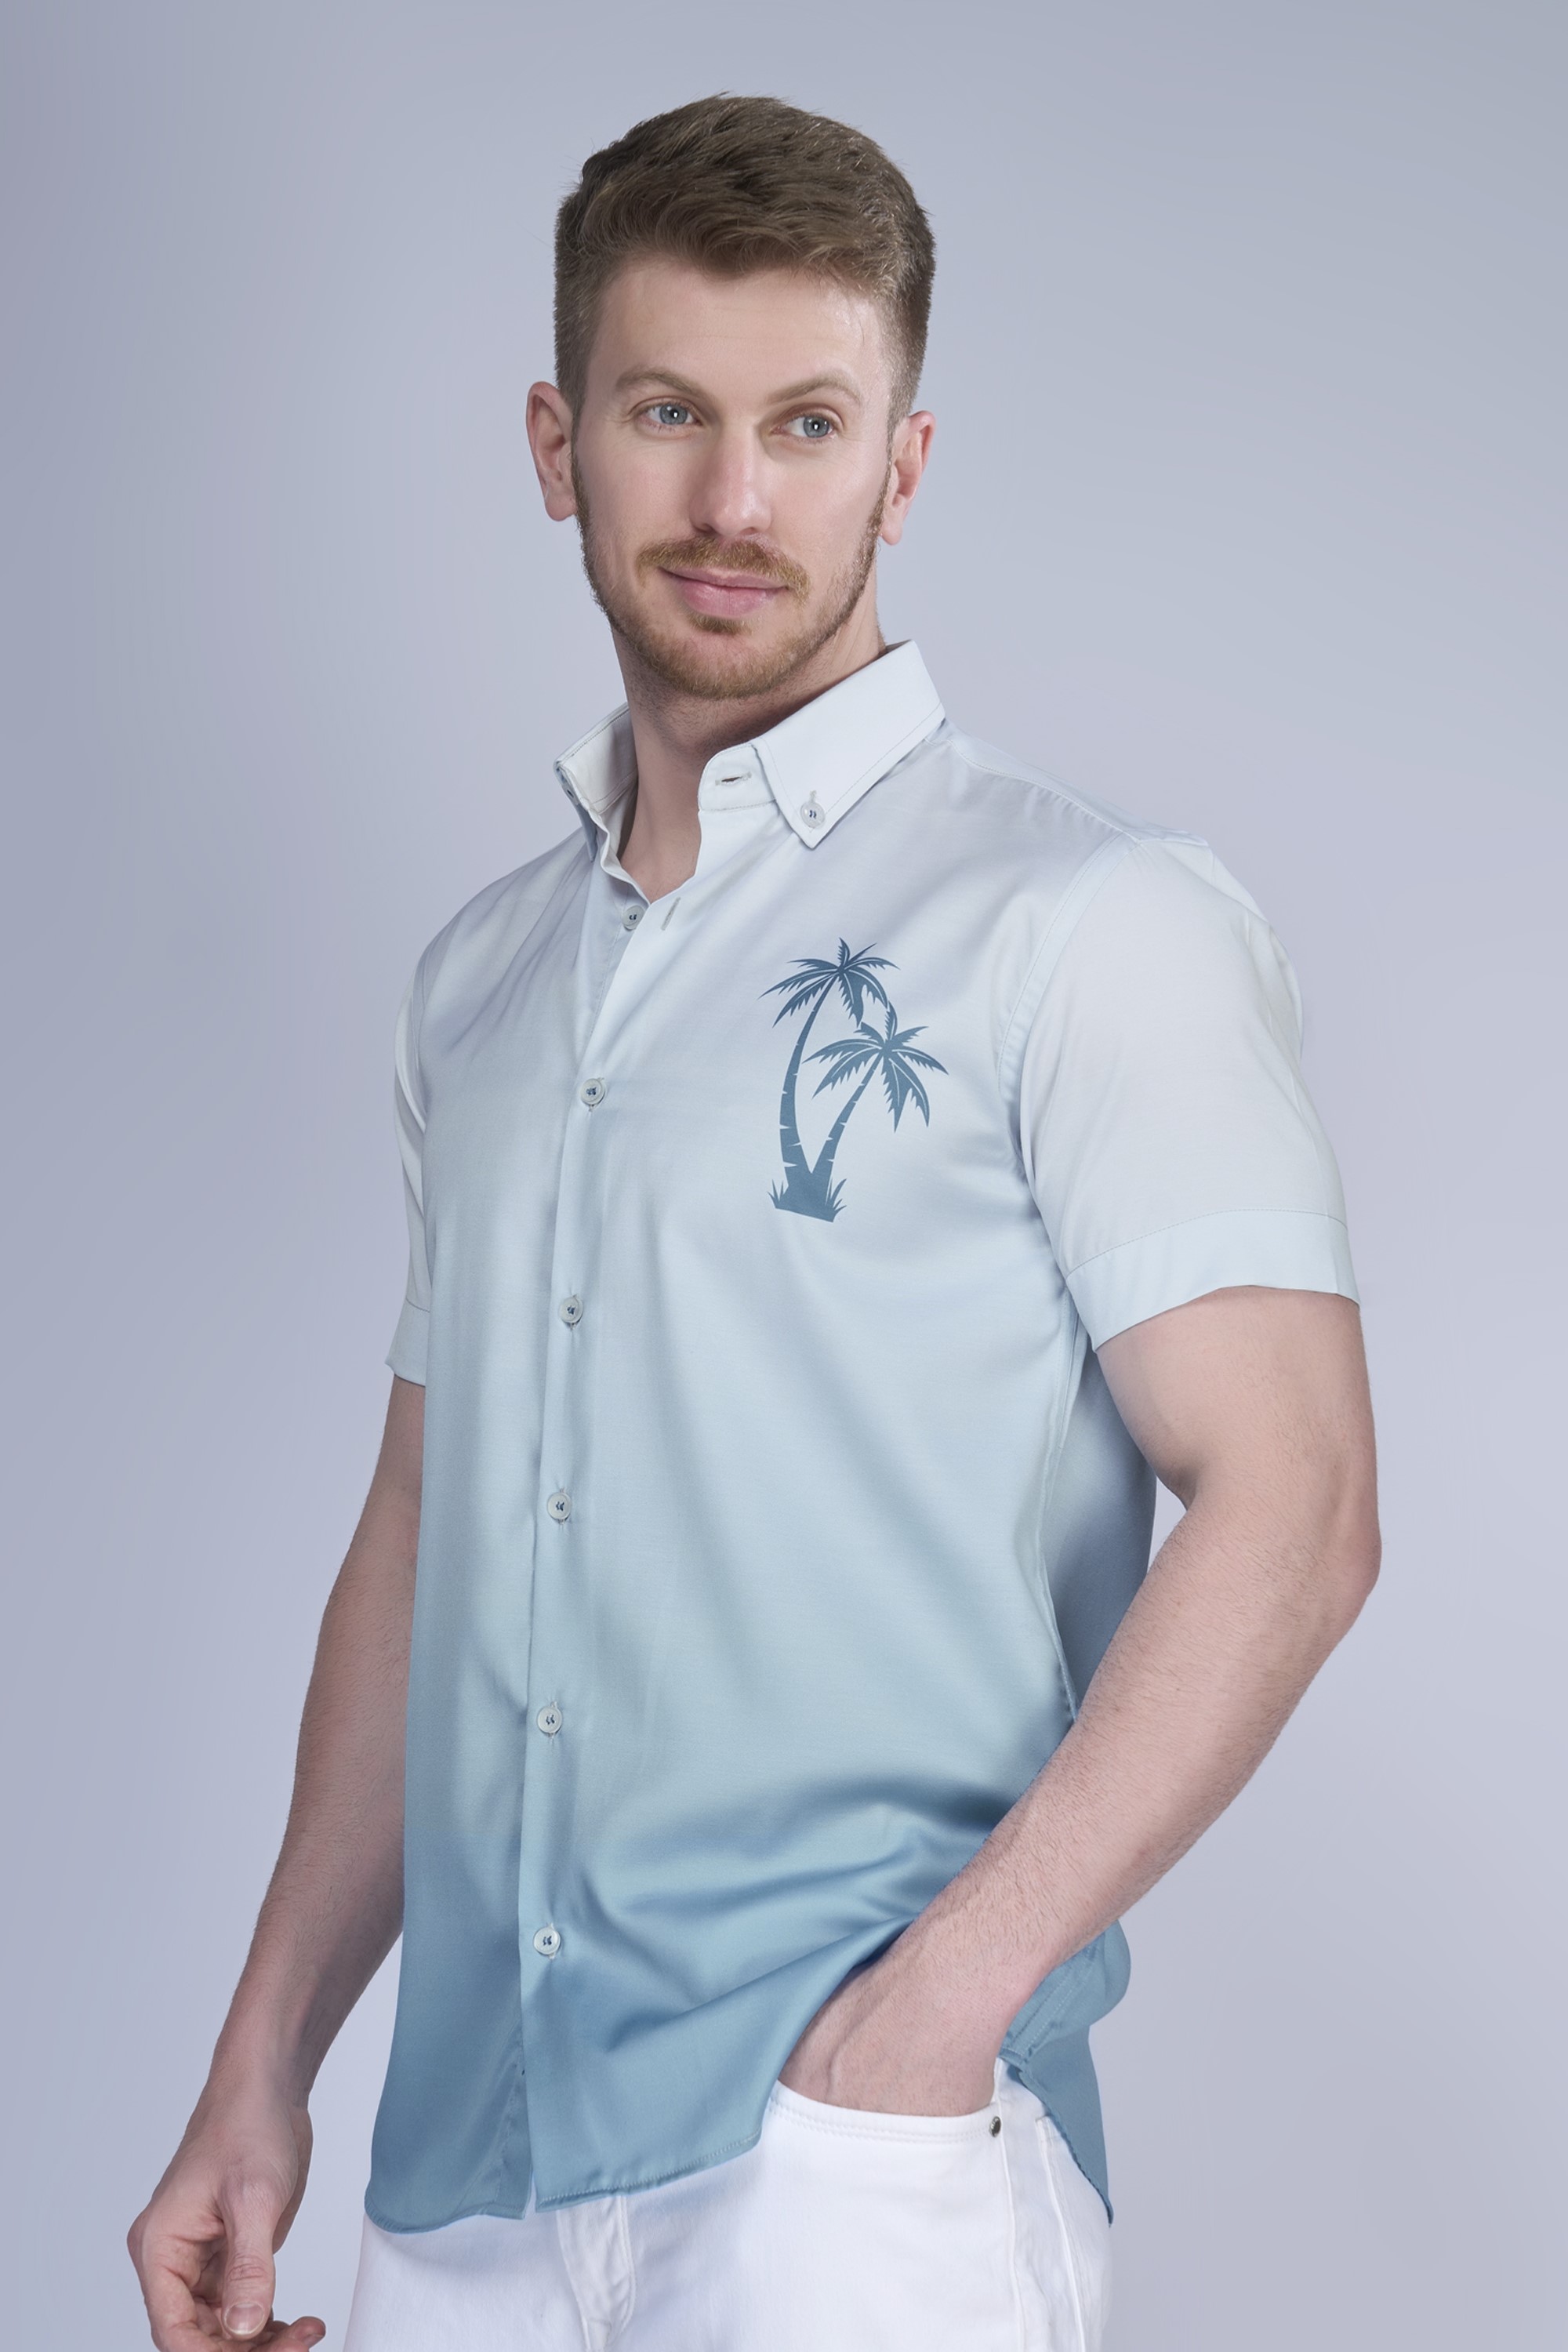 Palm Breeze shirt for Men